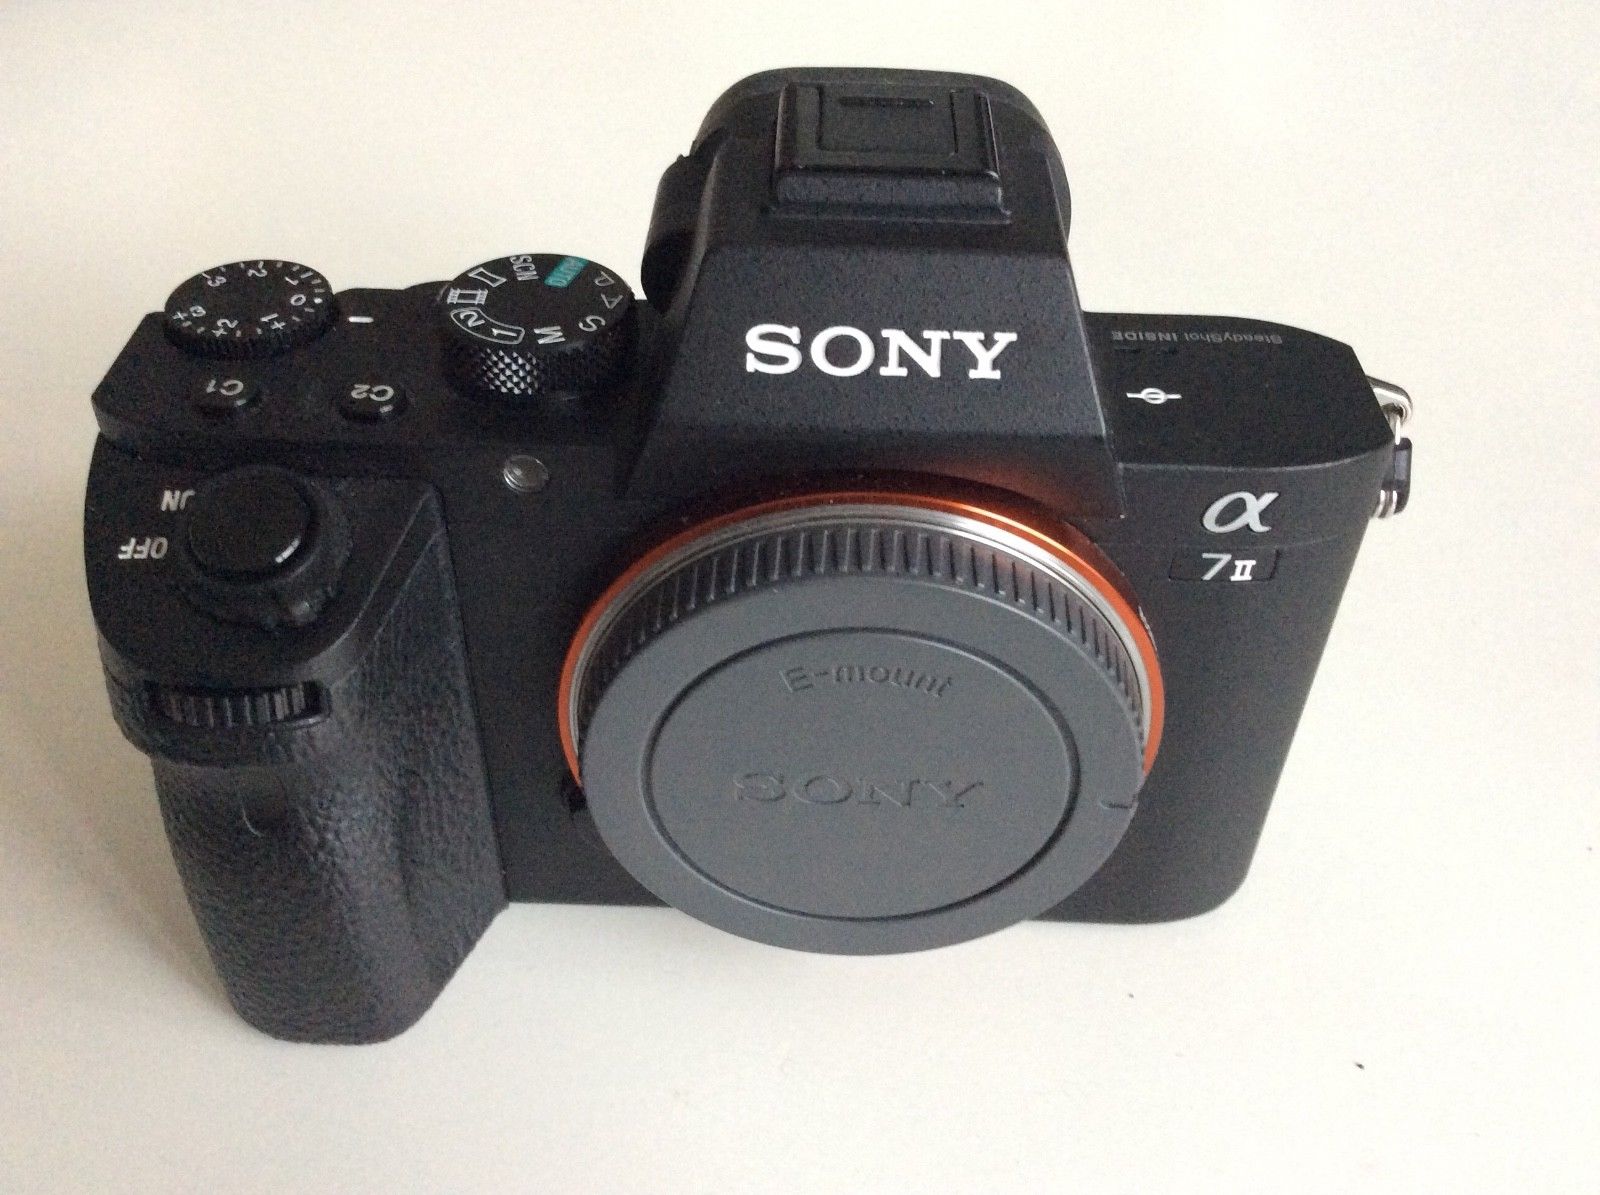 Sony Alpha 7 II ILCE-7M2 24.3 MP Digitalkamera - Schwarz (Gehäuse) Top-Zustand